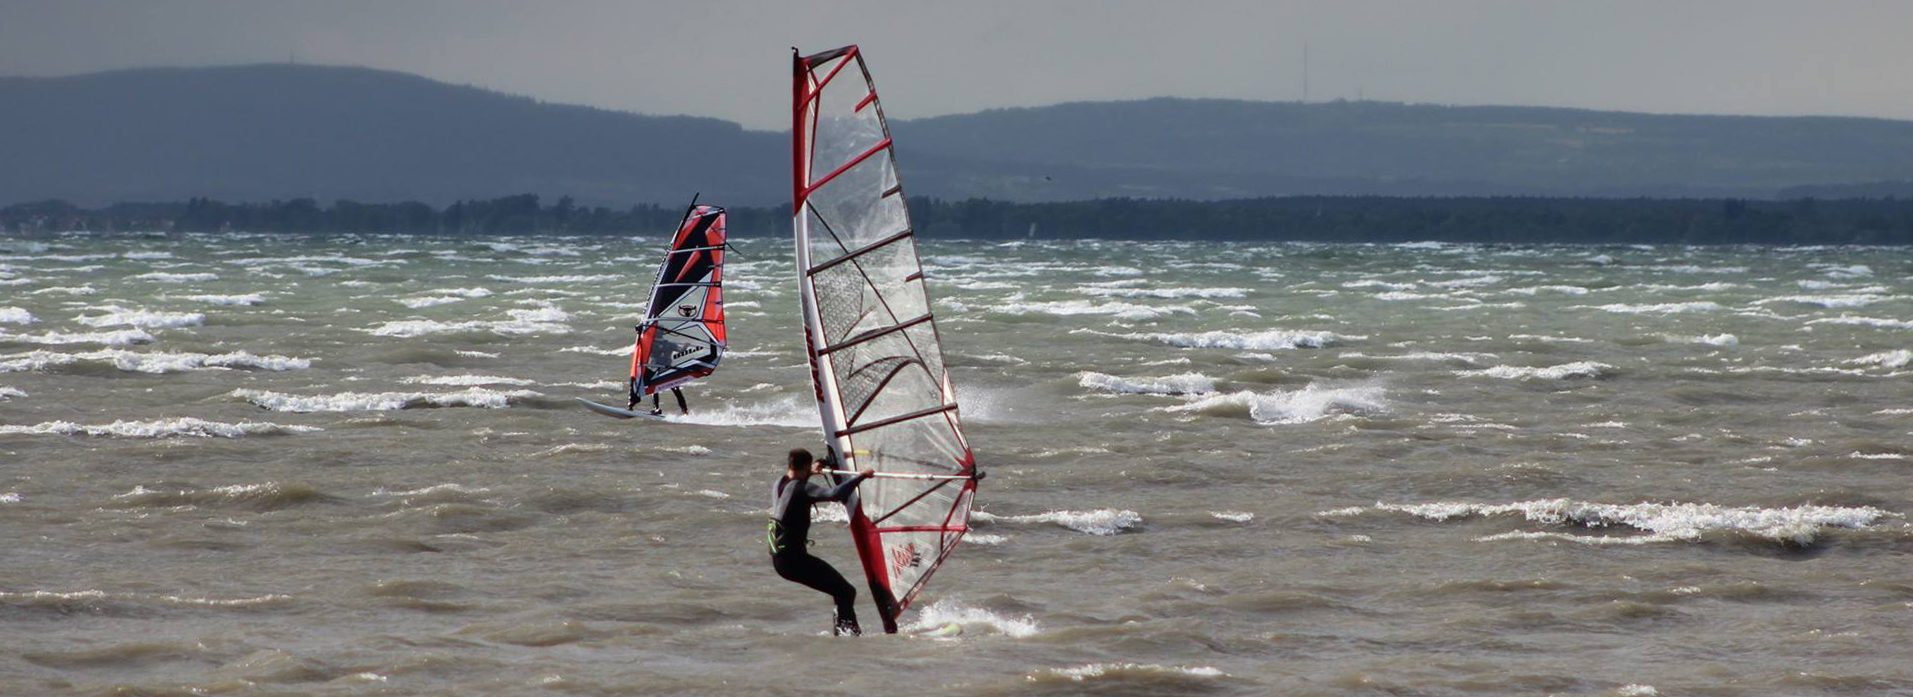 Windsurfclub Rheindelta